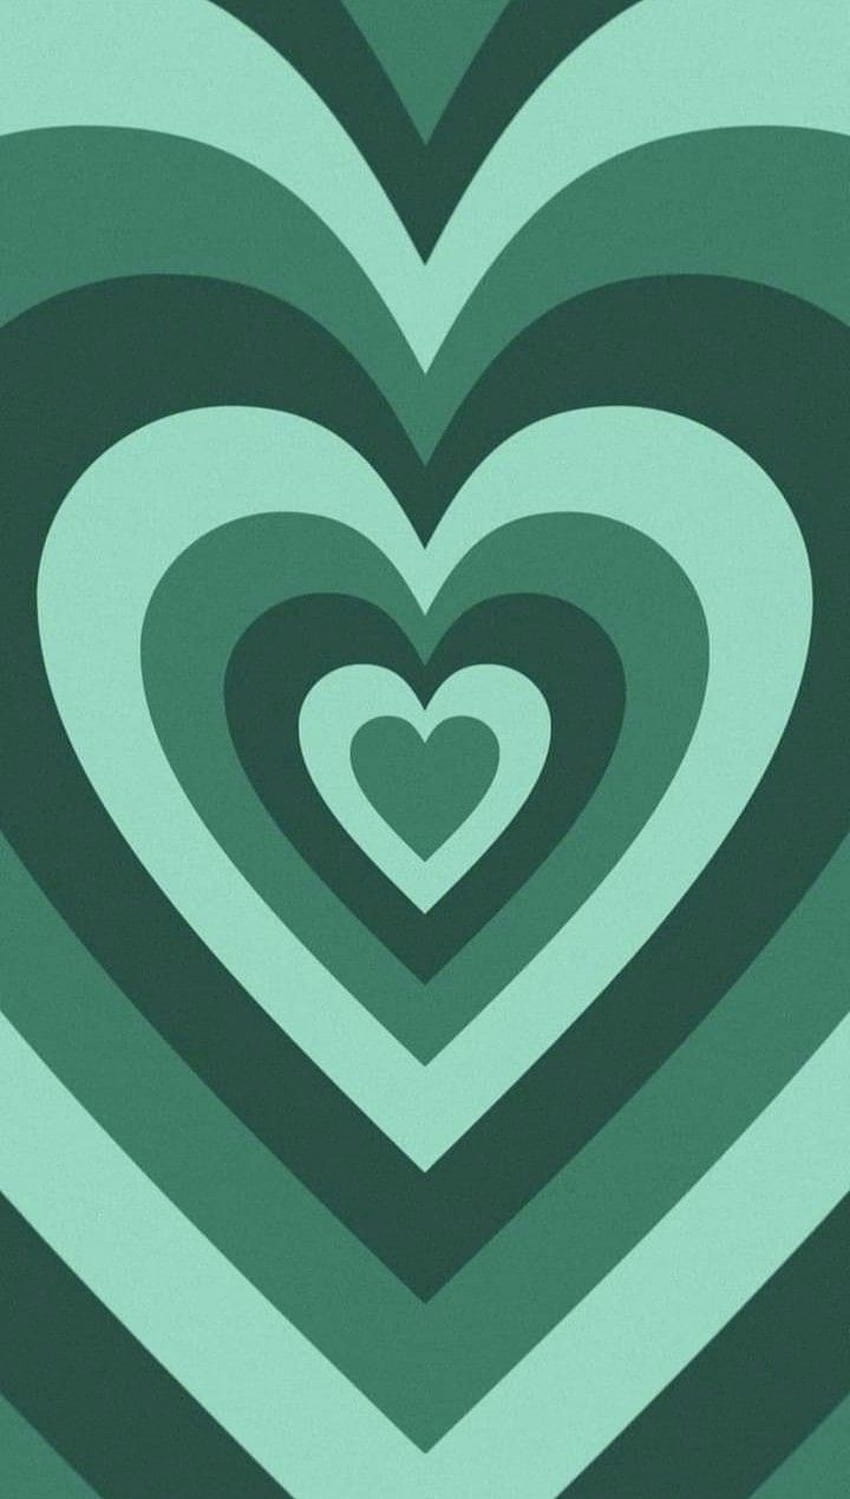 Y , mint green aesthetic heart HD phone wallpaper | Pxfuel